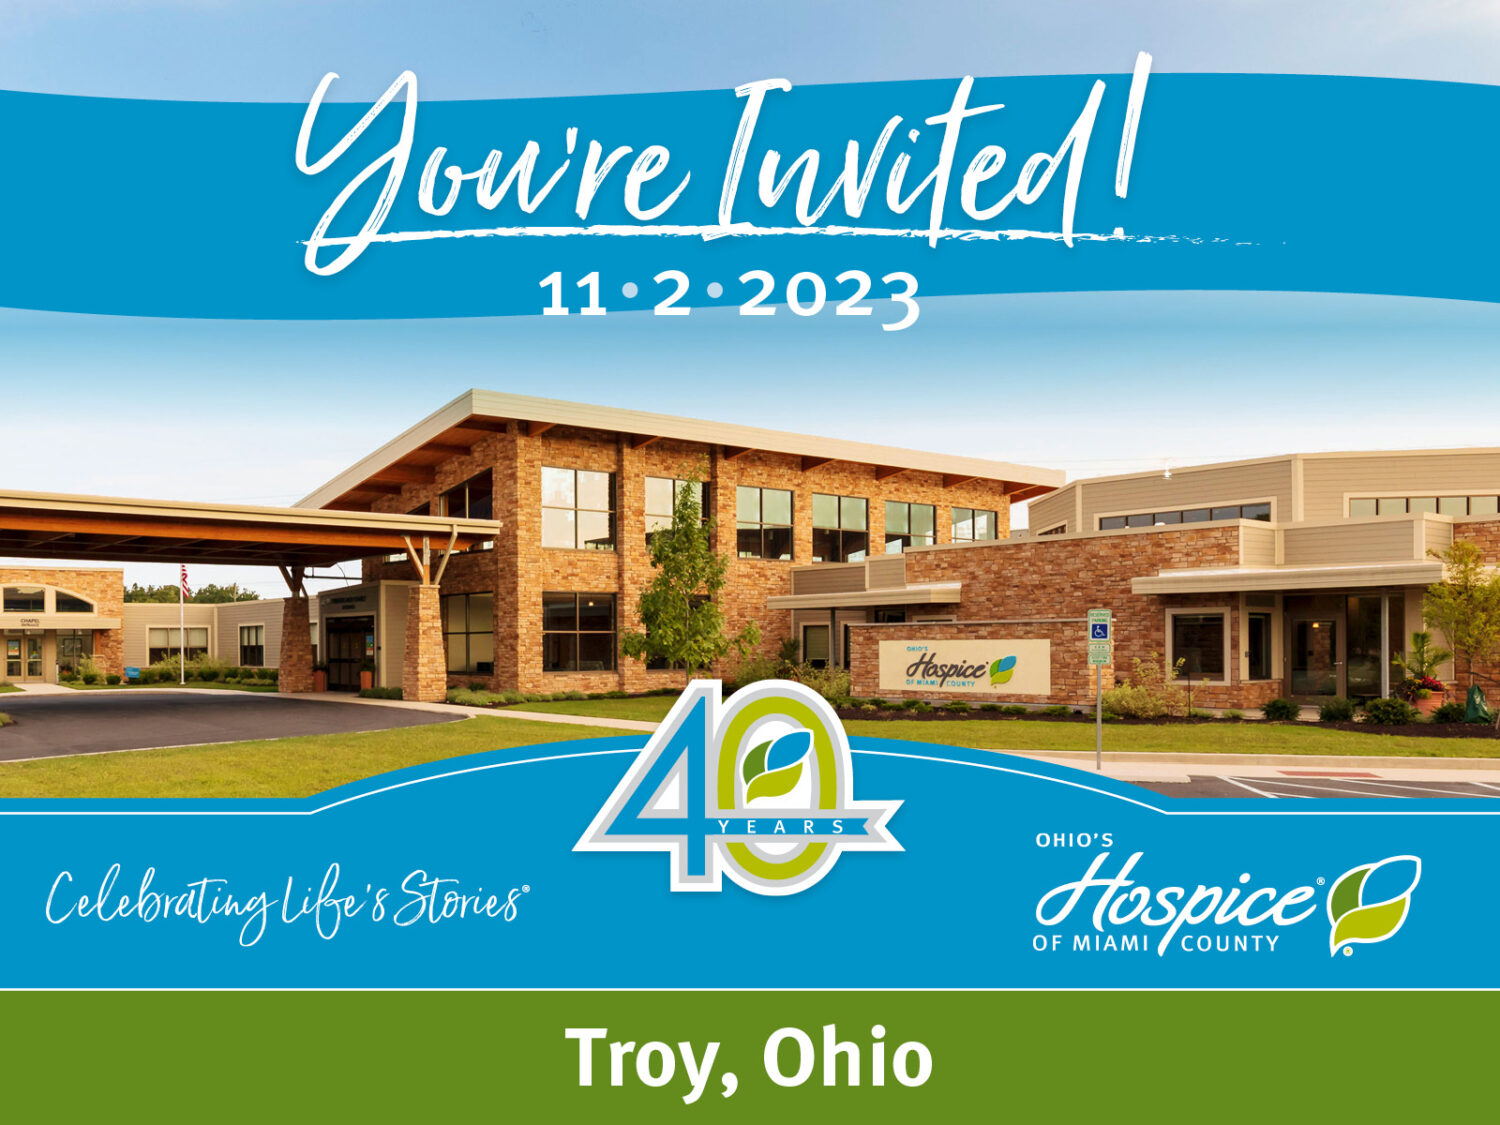 You're invited! 11.2.2023. 40th Anniversary. Ohio's Hospice of Miami County